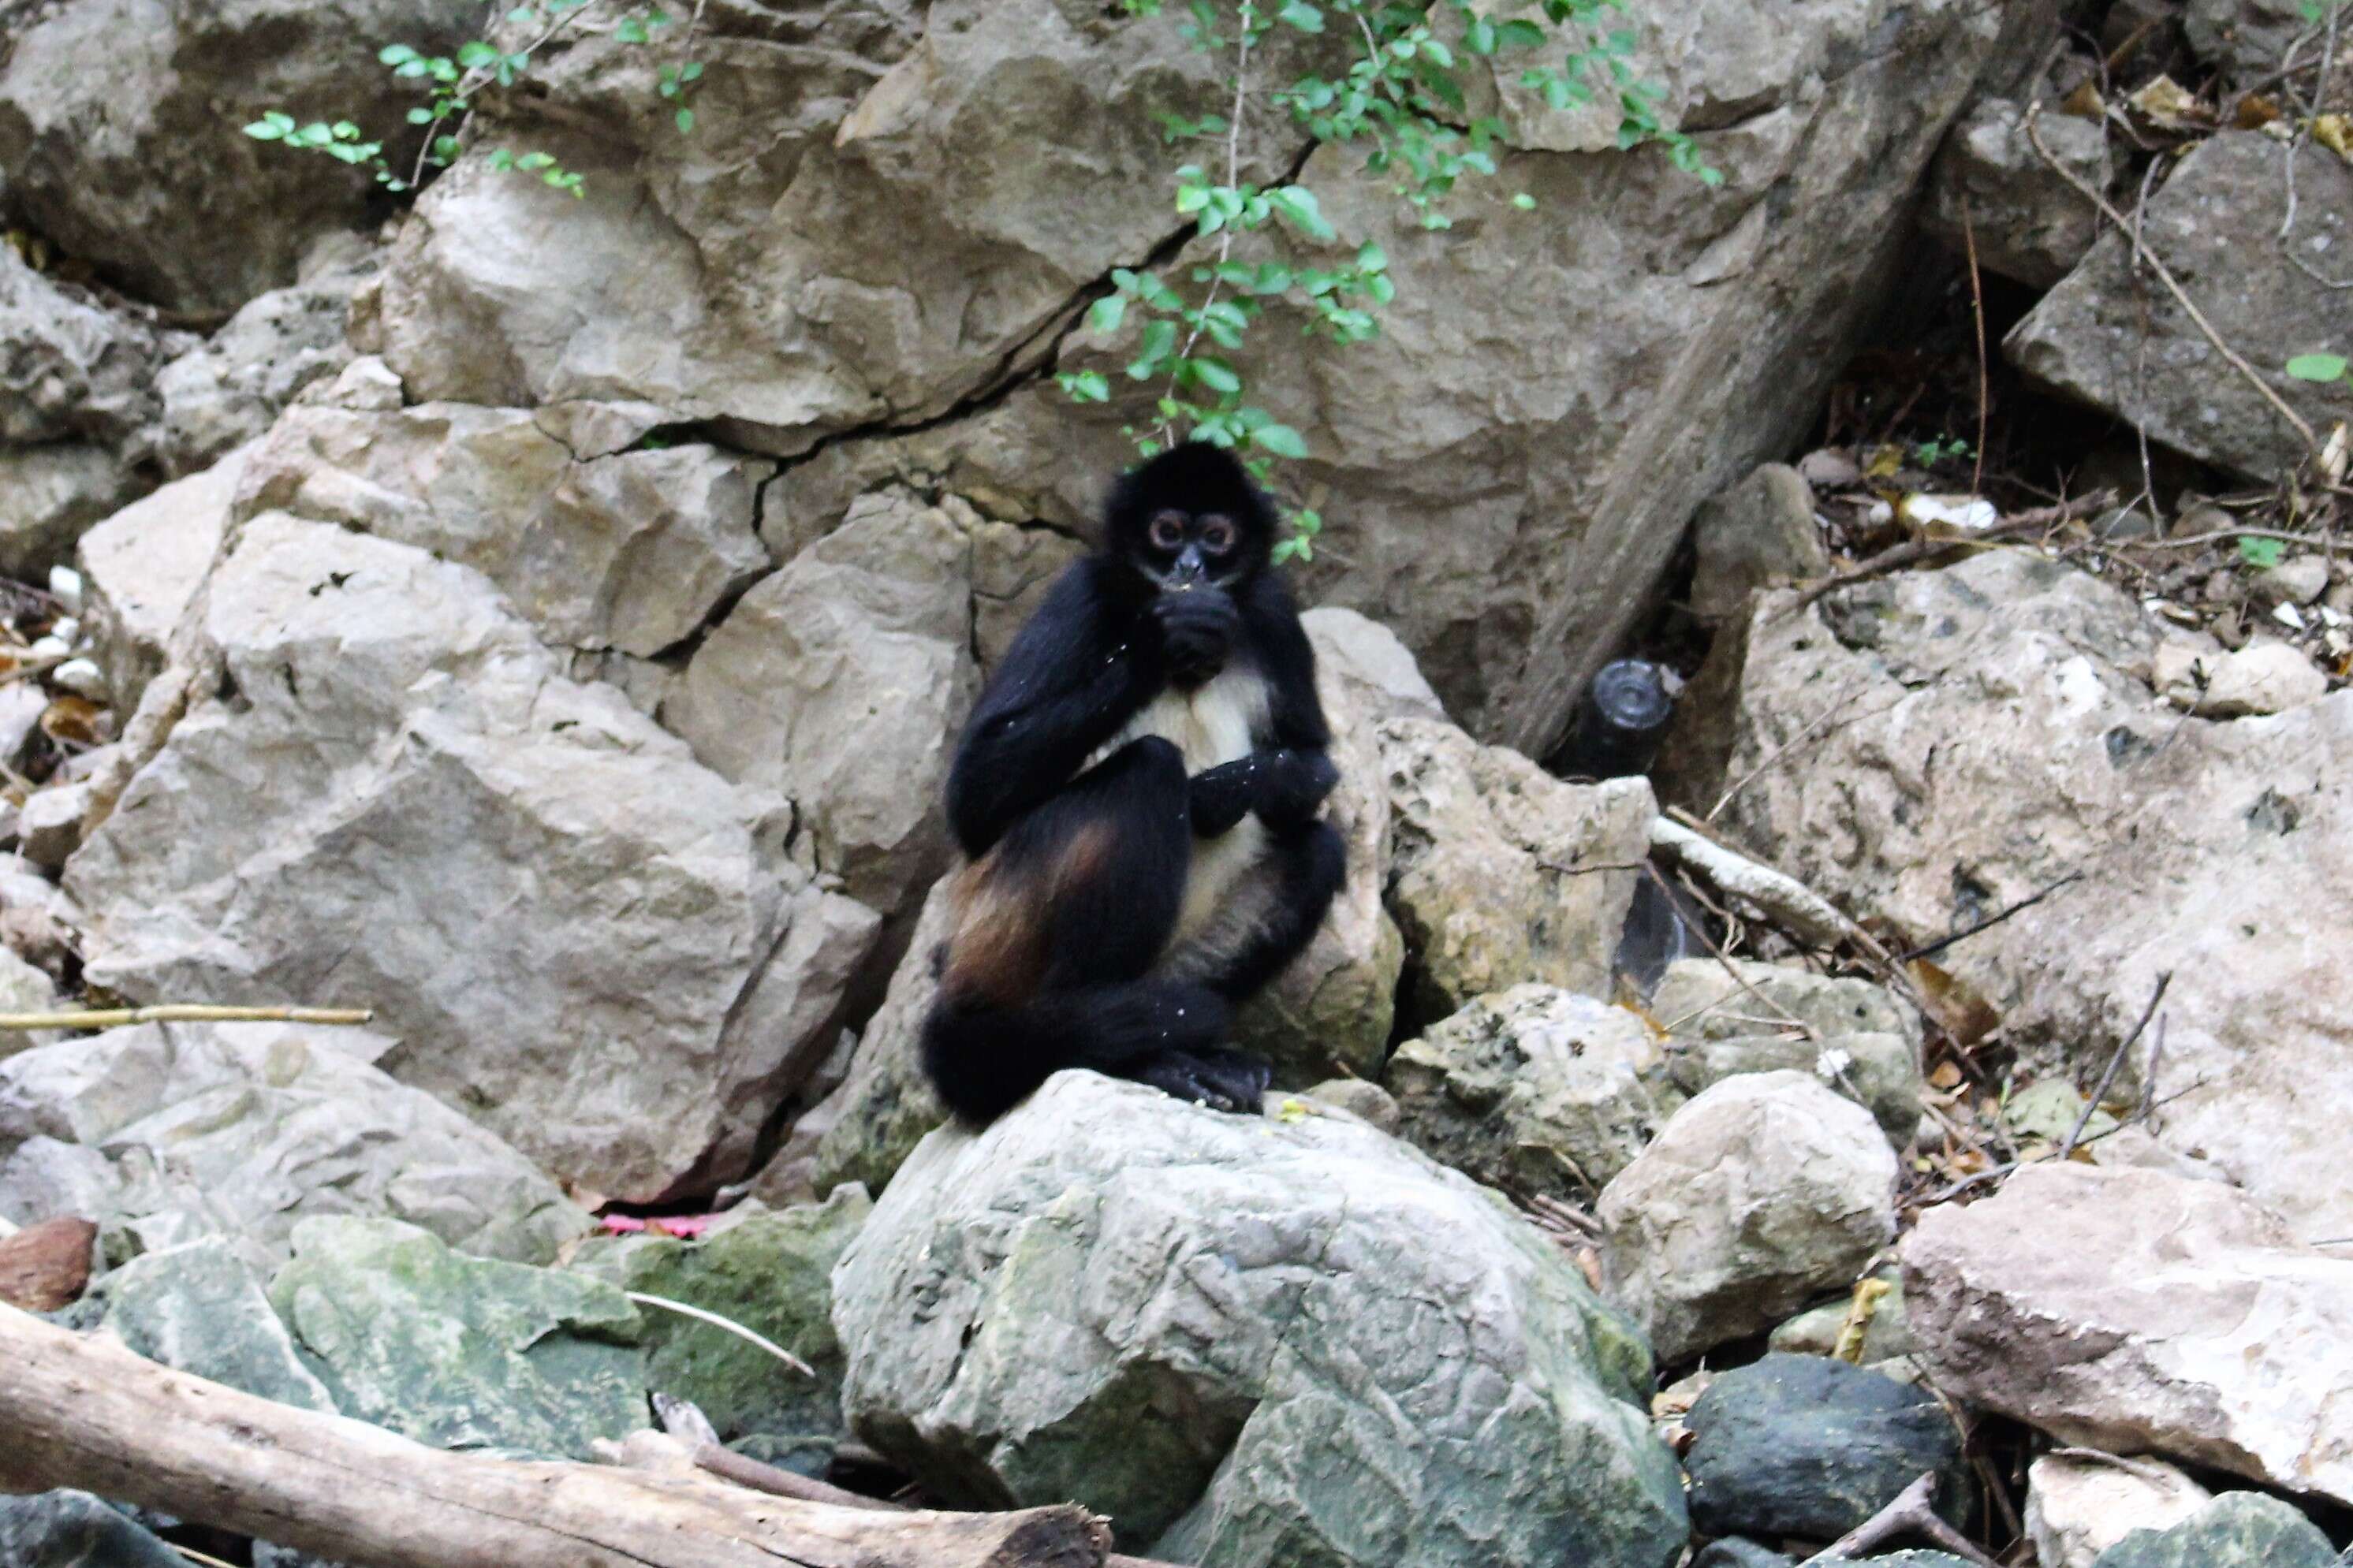 Image of Black-handed Spider Monkey